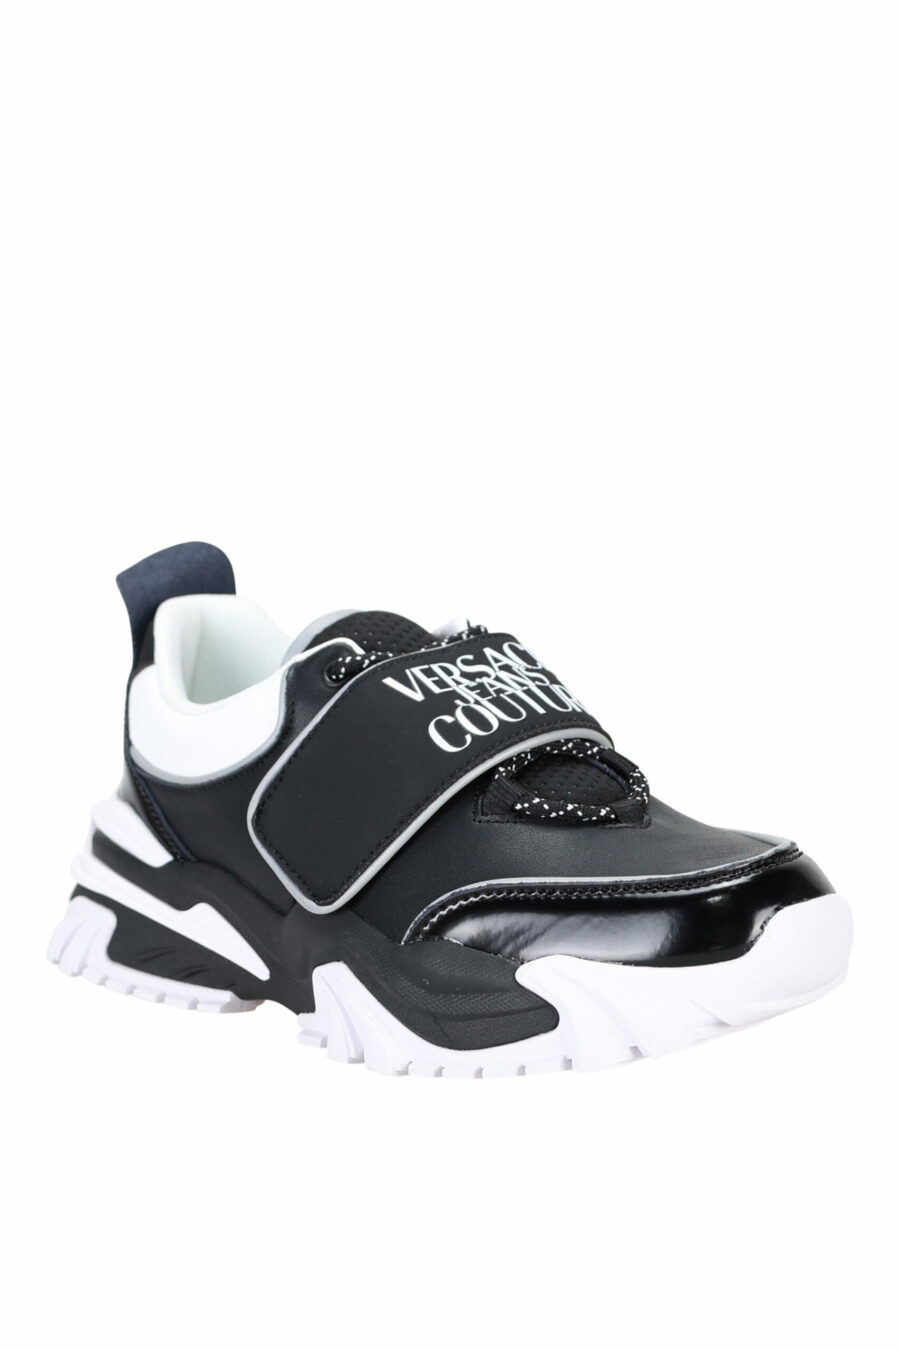 Zapatillas negras con blanco mix y logo en velcro - 808052019490008 1 scaled